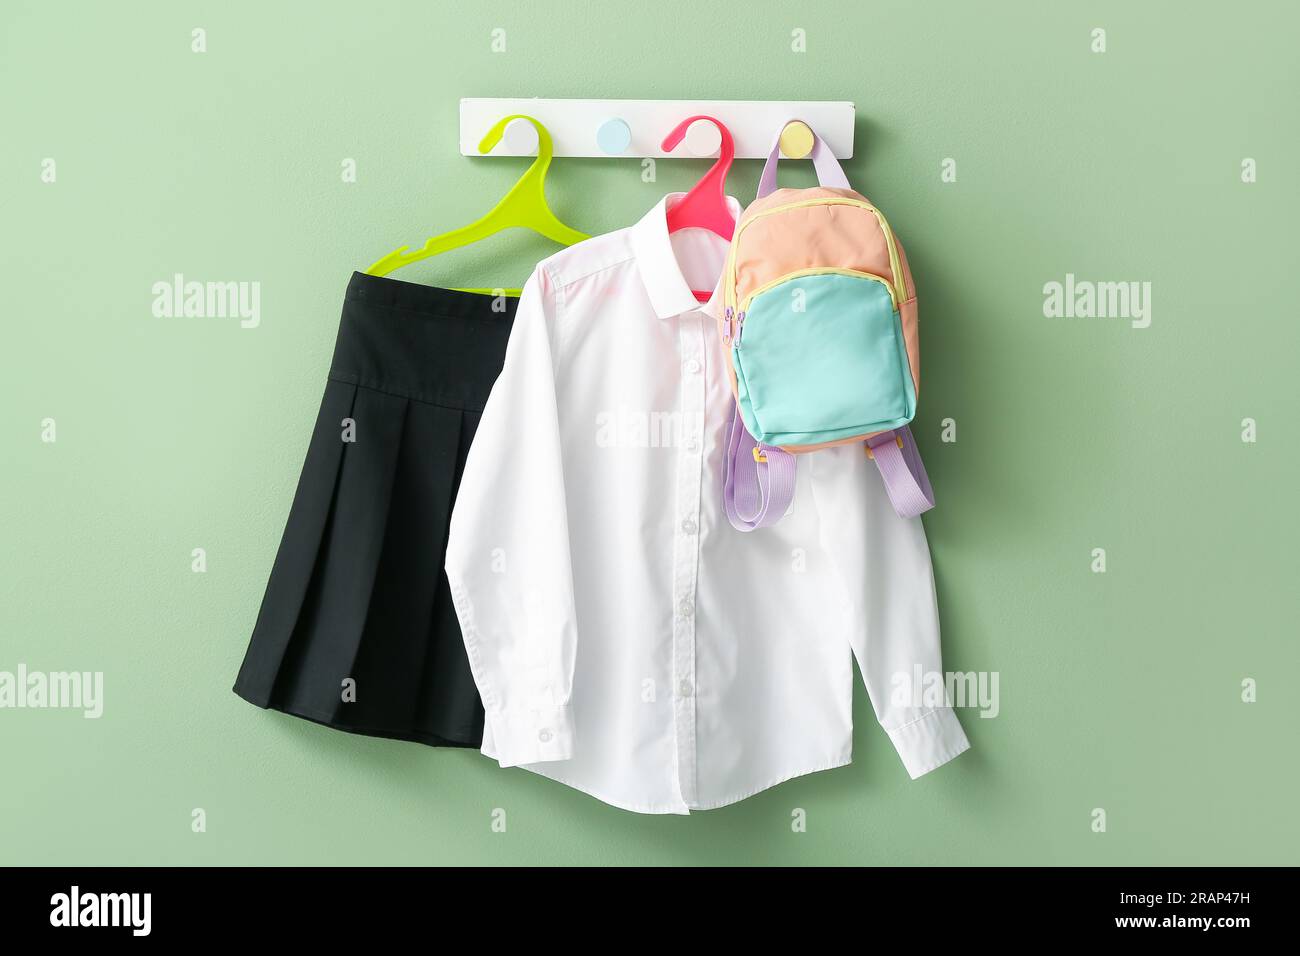 Schuluniform und Schultasche hängen an Haken Stockfotografie - Alamy